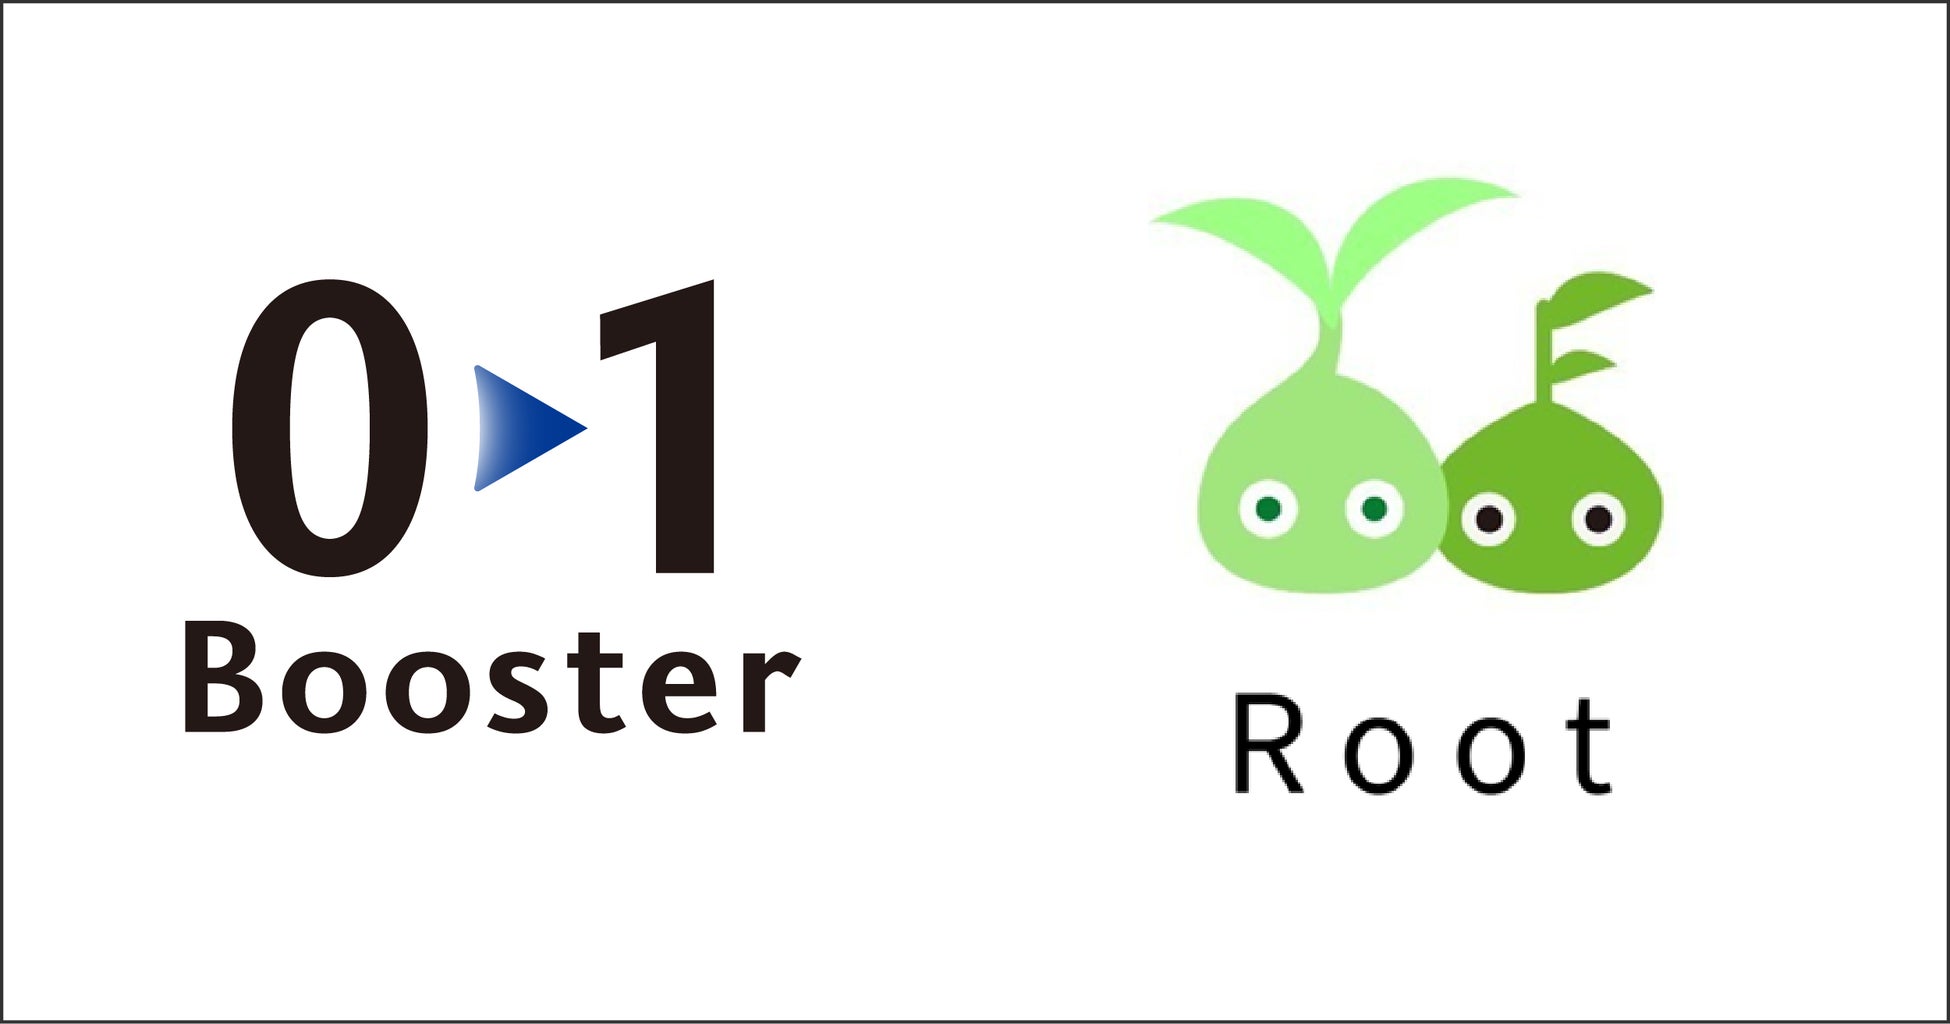 01Boosterアクセラレーター採択、出資先の株式会社Rootが株式会社トータテホールディングスのグループ傘下にのサブ画像1